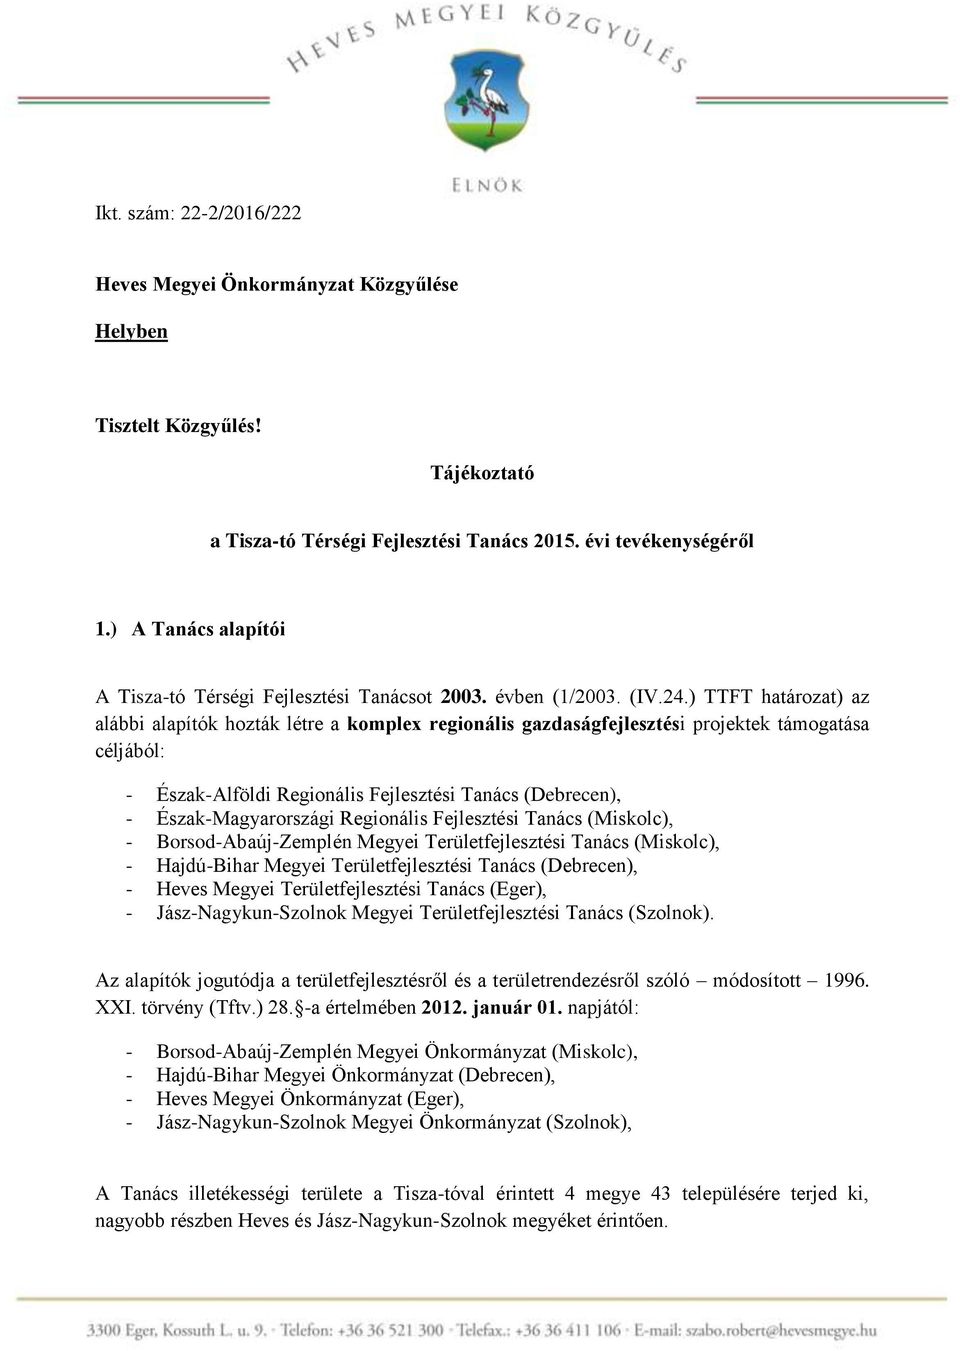 ) TTFT határozat) az alábbi alapítók hozták létre a komplex regionális gazdaságfejlesztési projektek támogatása céljából: - Észak-Alföldi Regionális Fejlesztési Tanács (Debrecen), -